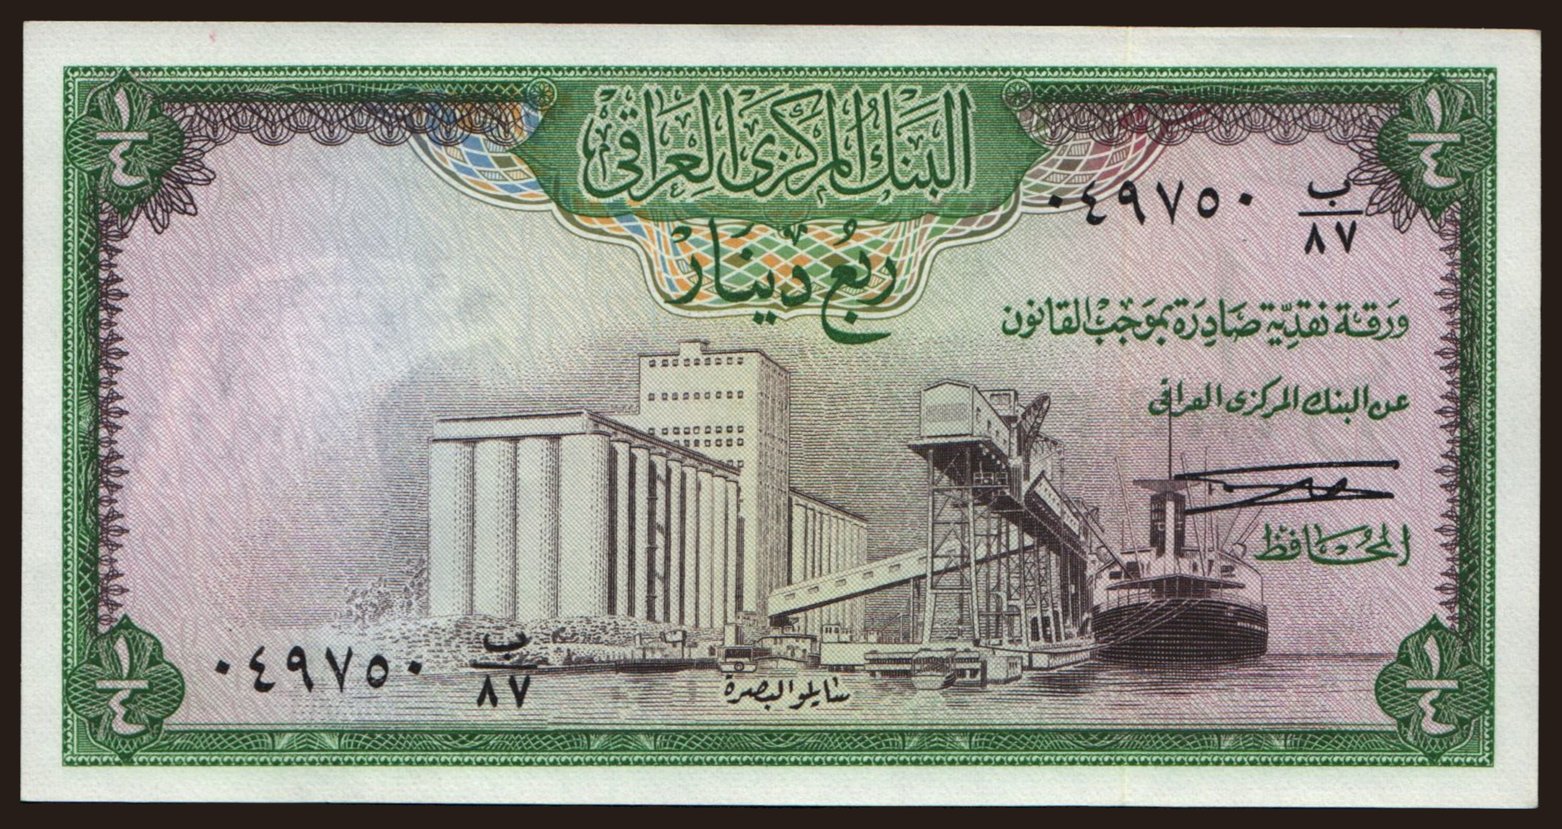 1/4 dinar, 1971